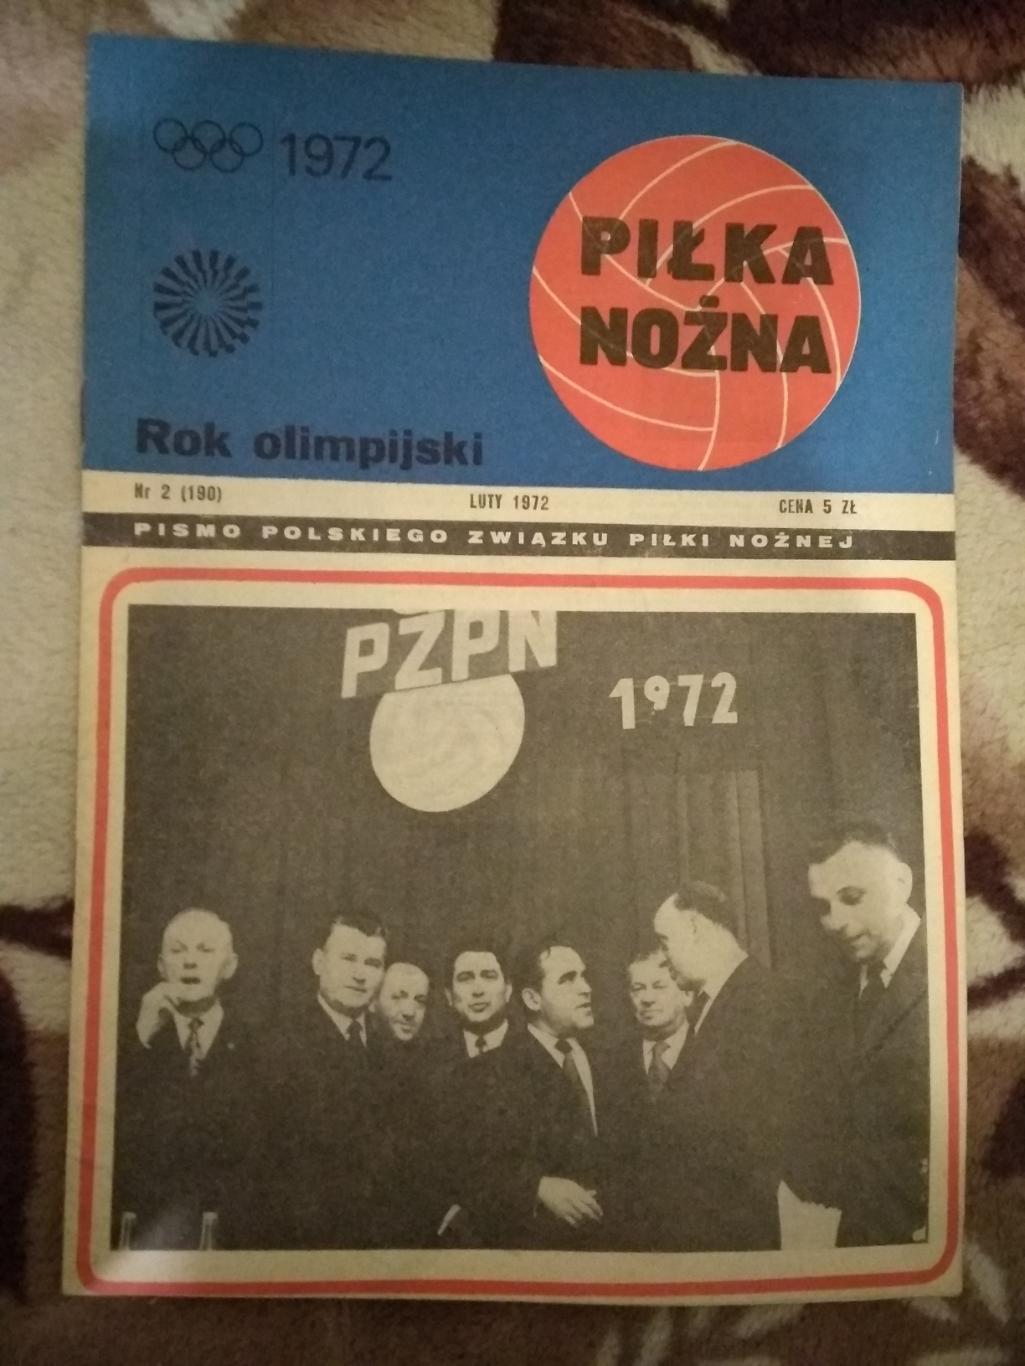 Газета.Футбол.Пилка ножна № 2 1972 г. (Польша).